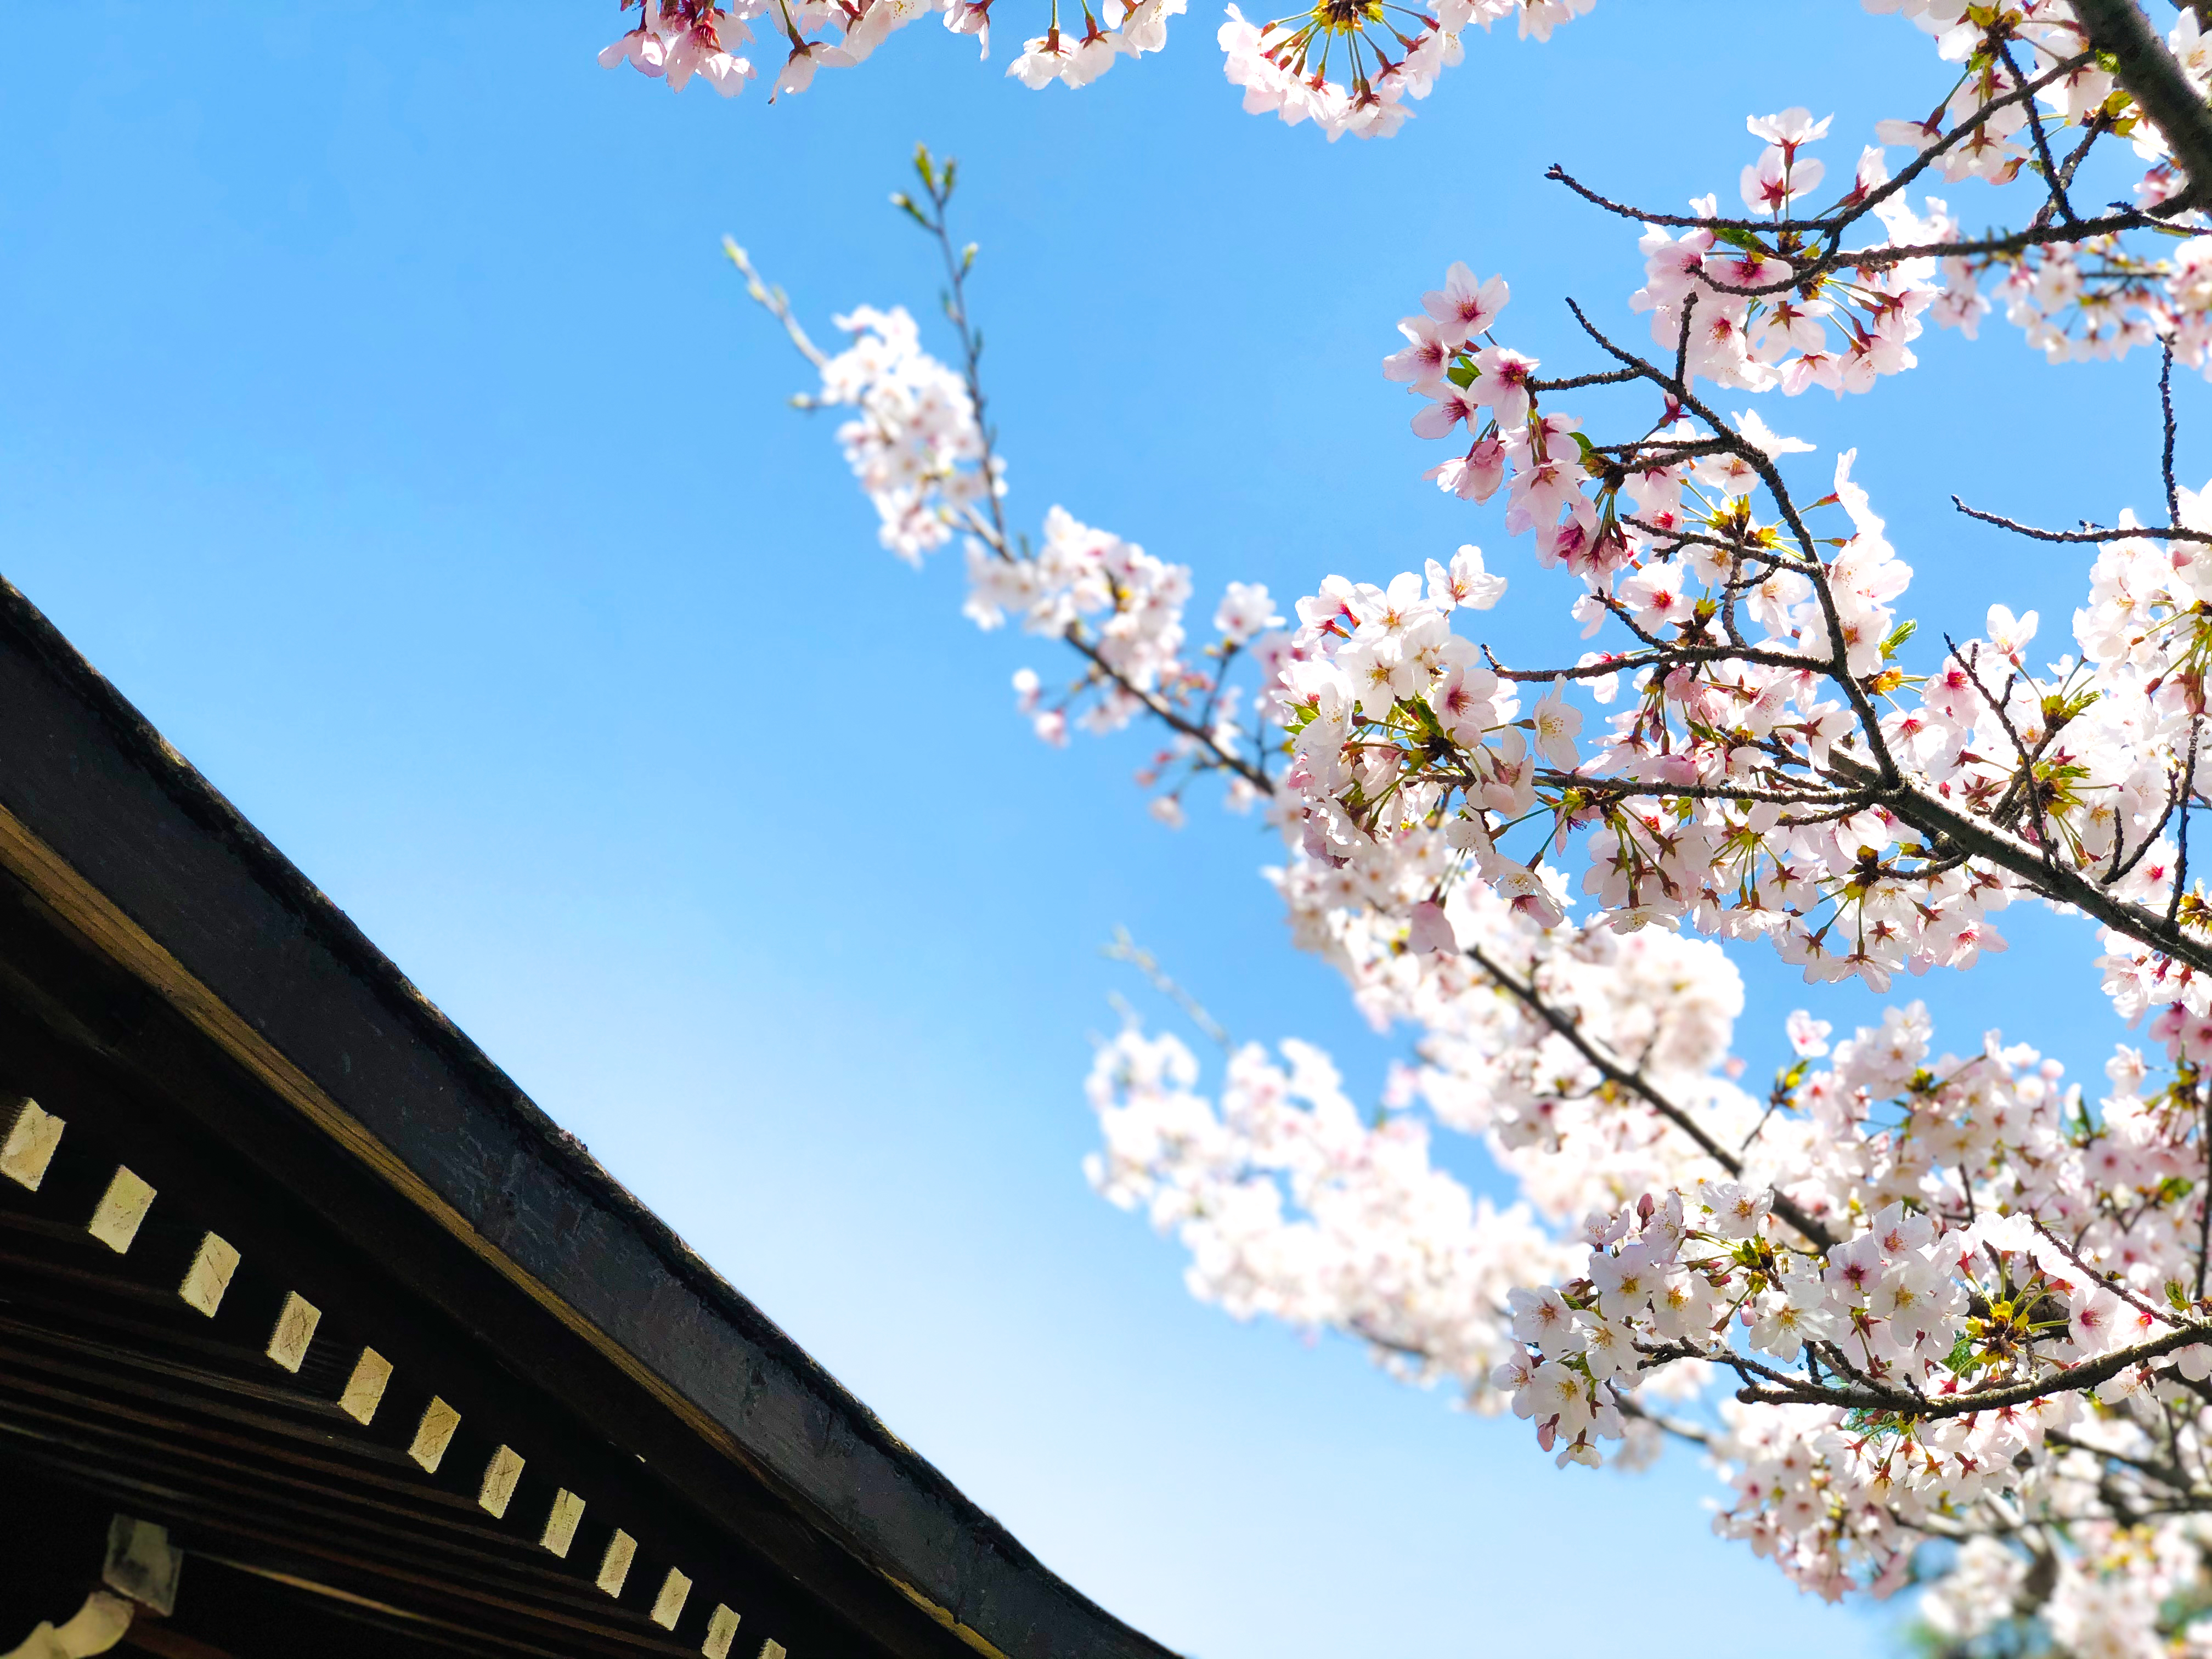 桜の枝と青空 1 無料写真 フリー素材のダウンロードサイト もある